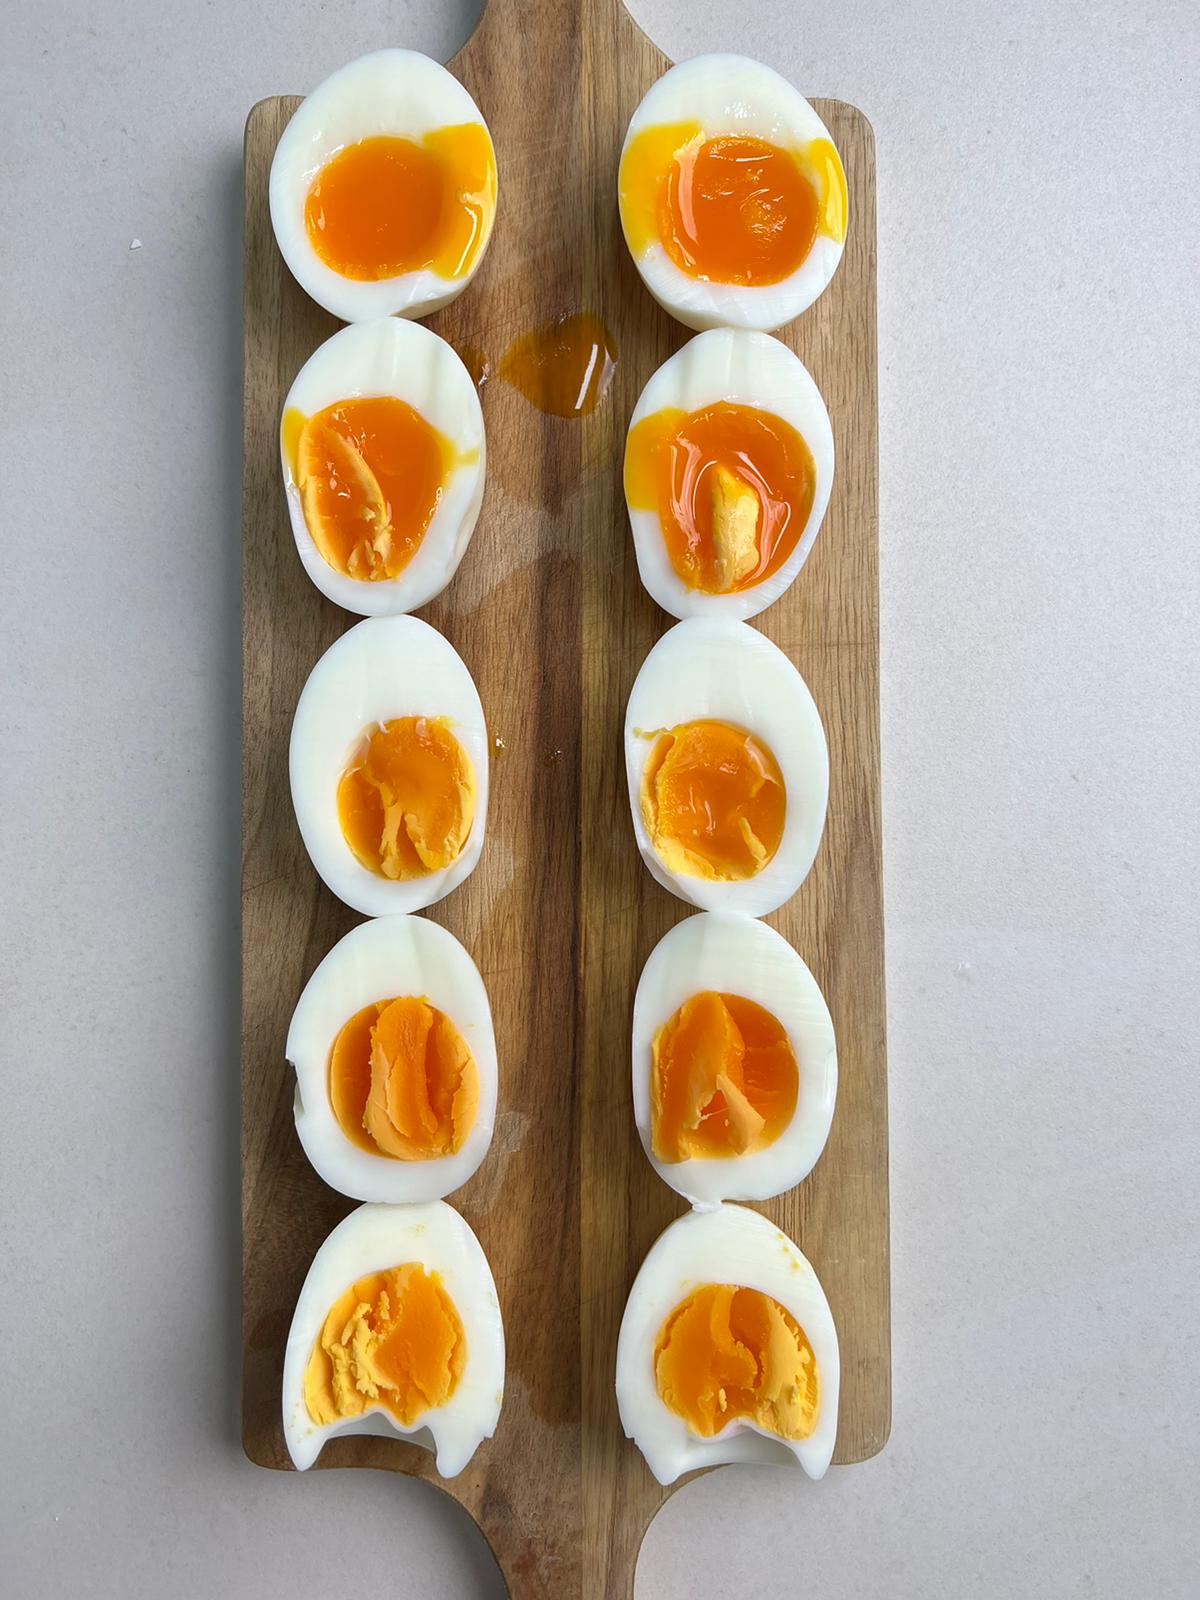 איך מכינים ביצה קשה